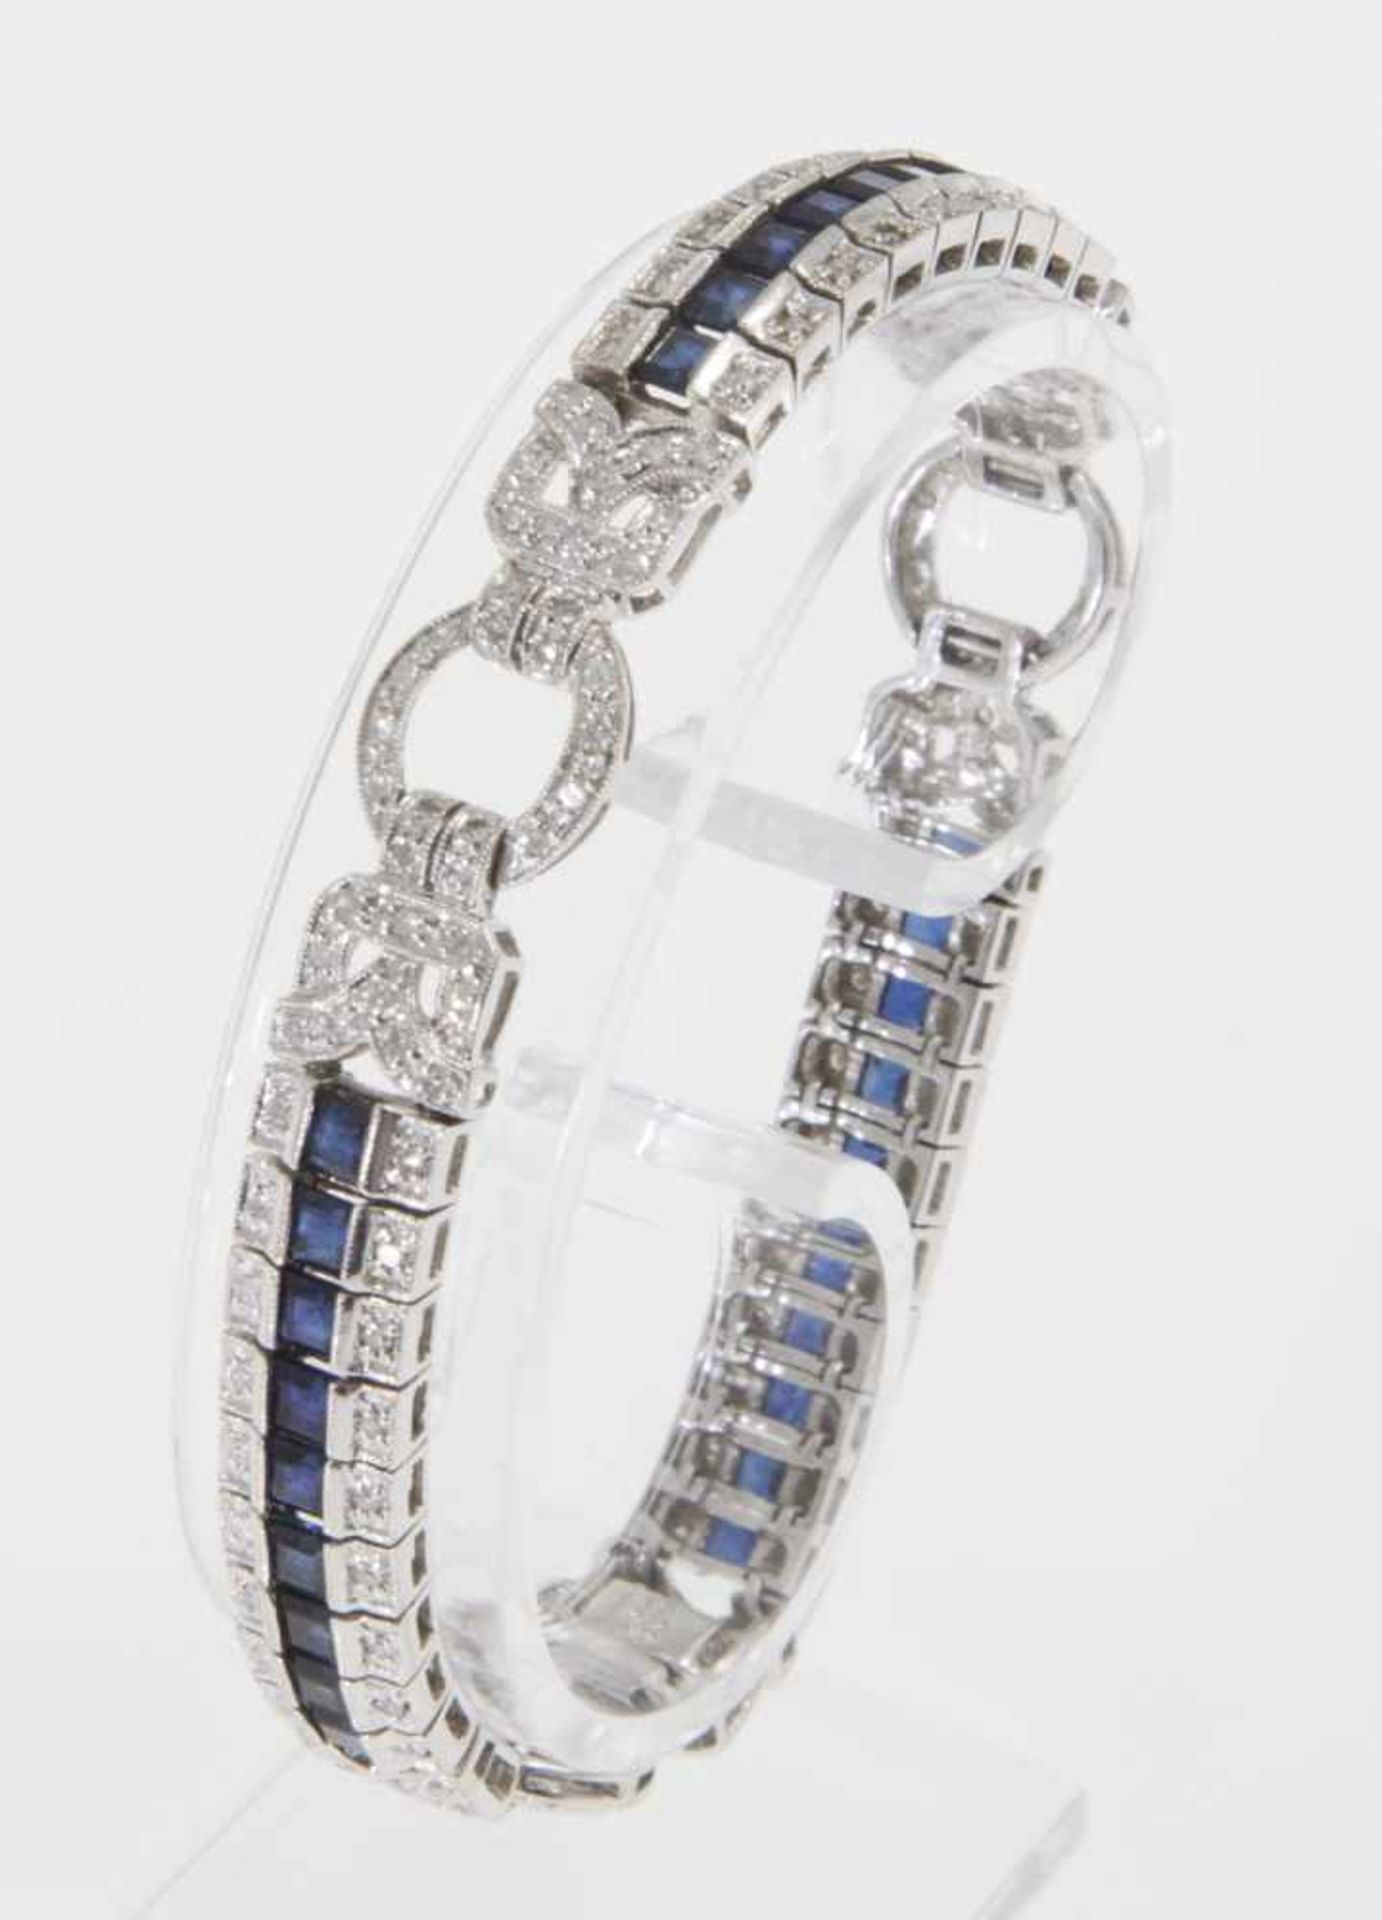 Feines Art déco-Saphir-Diamant-ArmbandWeißgold 750. Ausgefasst mit Saphircarrés und ca. 160